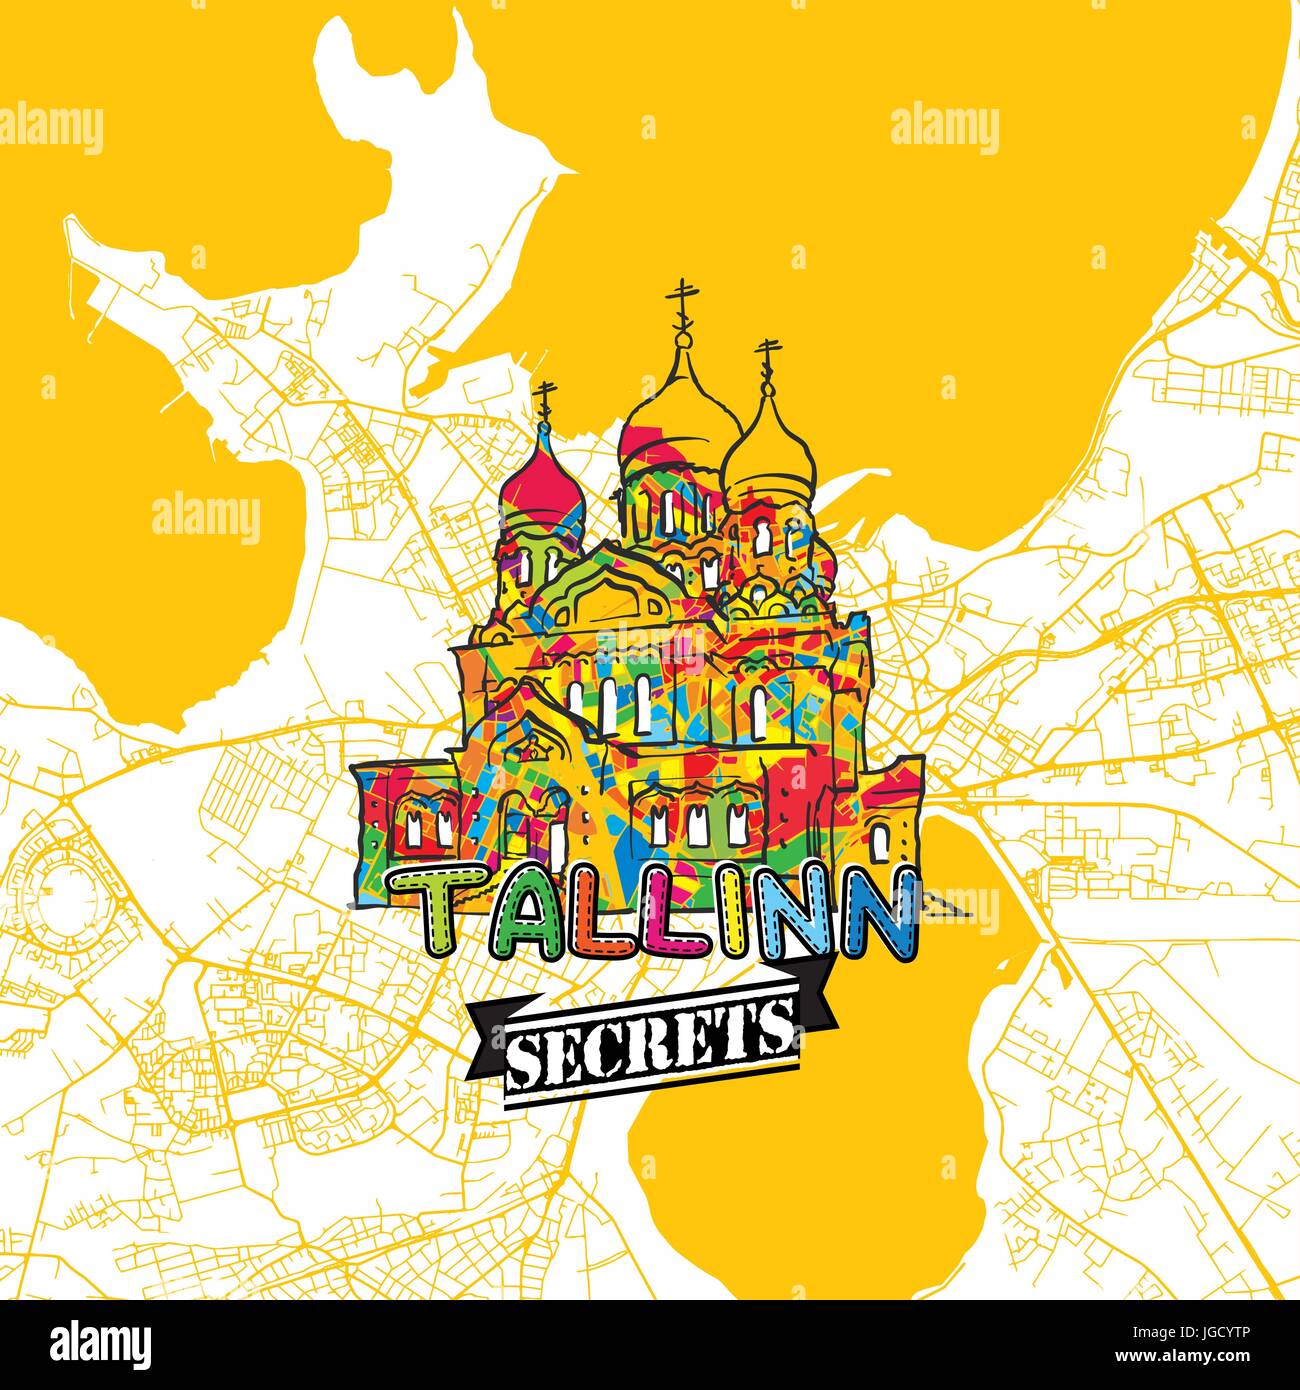 Voyage Tallinn Carte Art Secrets pour la cartographie des experts et des guides de voyage. Le logo de la ville à la main, typo de badge et dessinés à la main sur le dessus de l'image vectorielle sont regroupés un Illustration de Vecteur